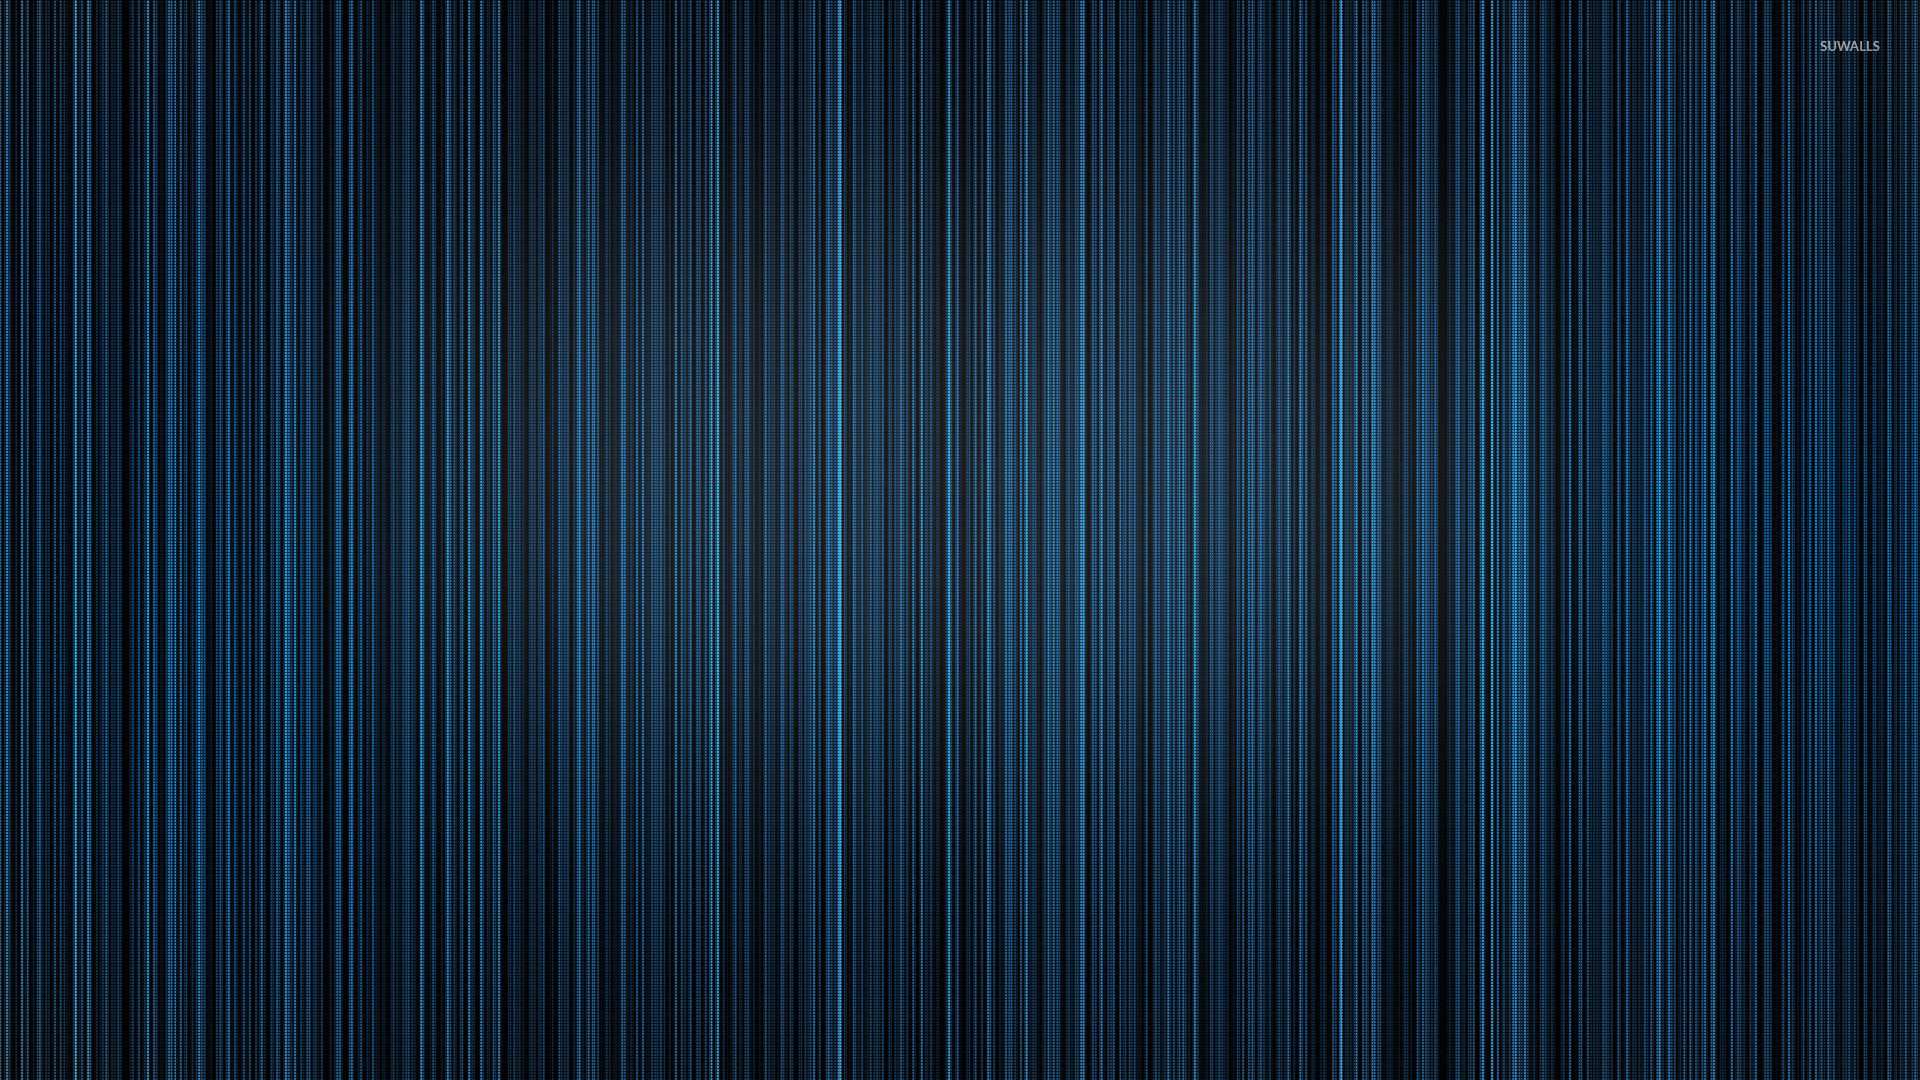 1920x1080 Gray and Blue Wallpaper - WallpaperSafari